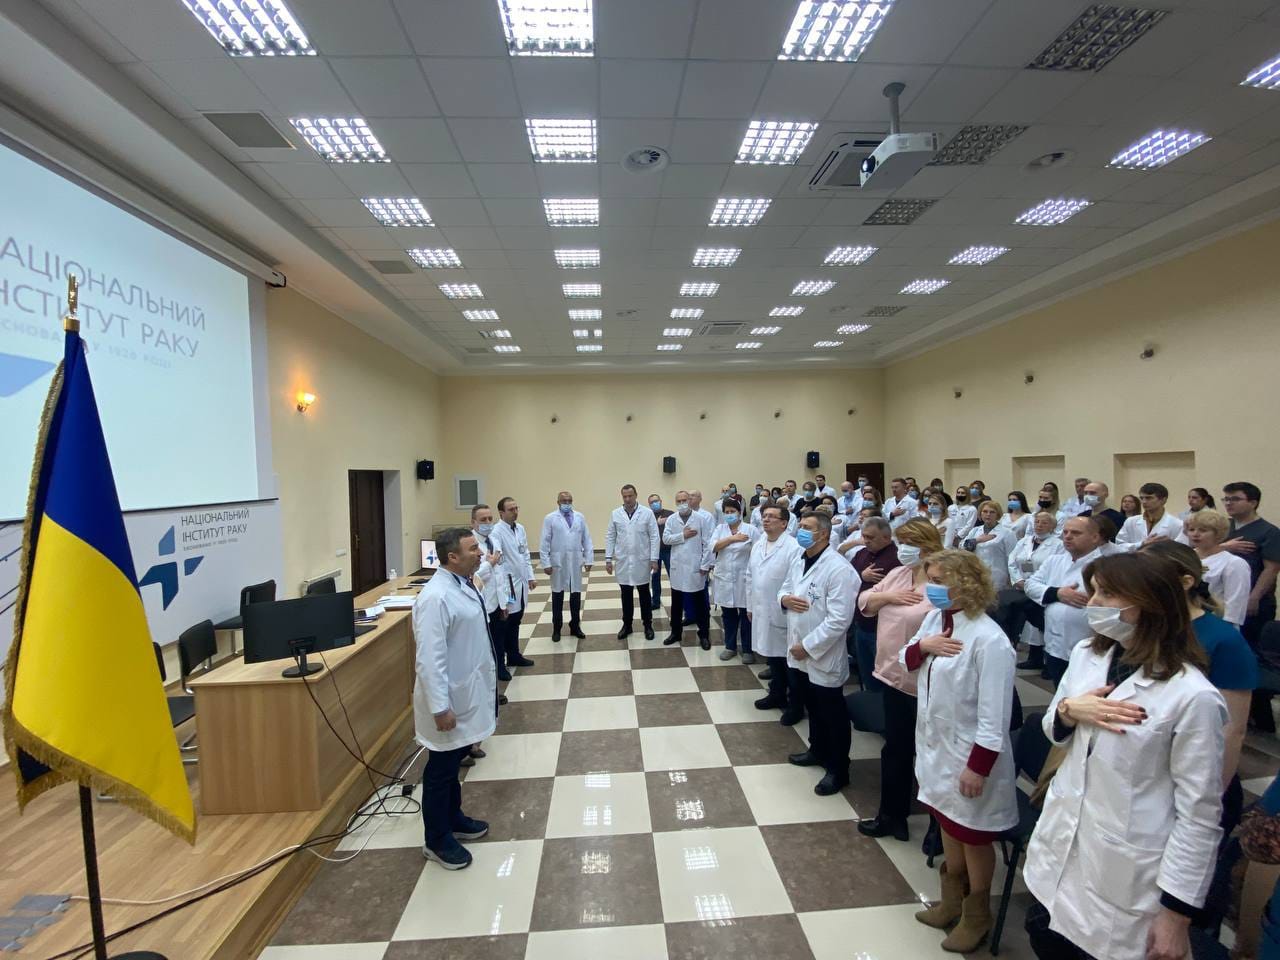 13 пацієнтів та пацієнток залишаються в Інституті раку у Києві, разом з ними — персонал з сім'ями